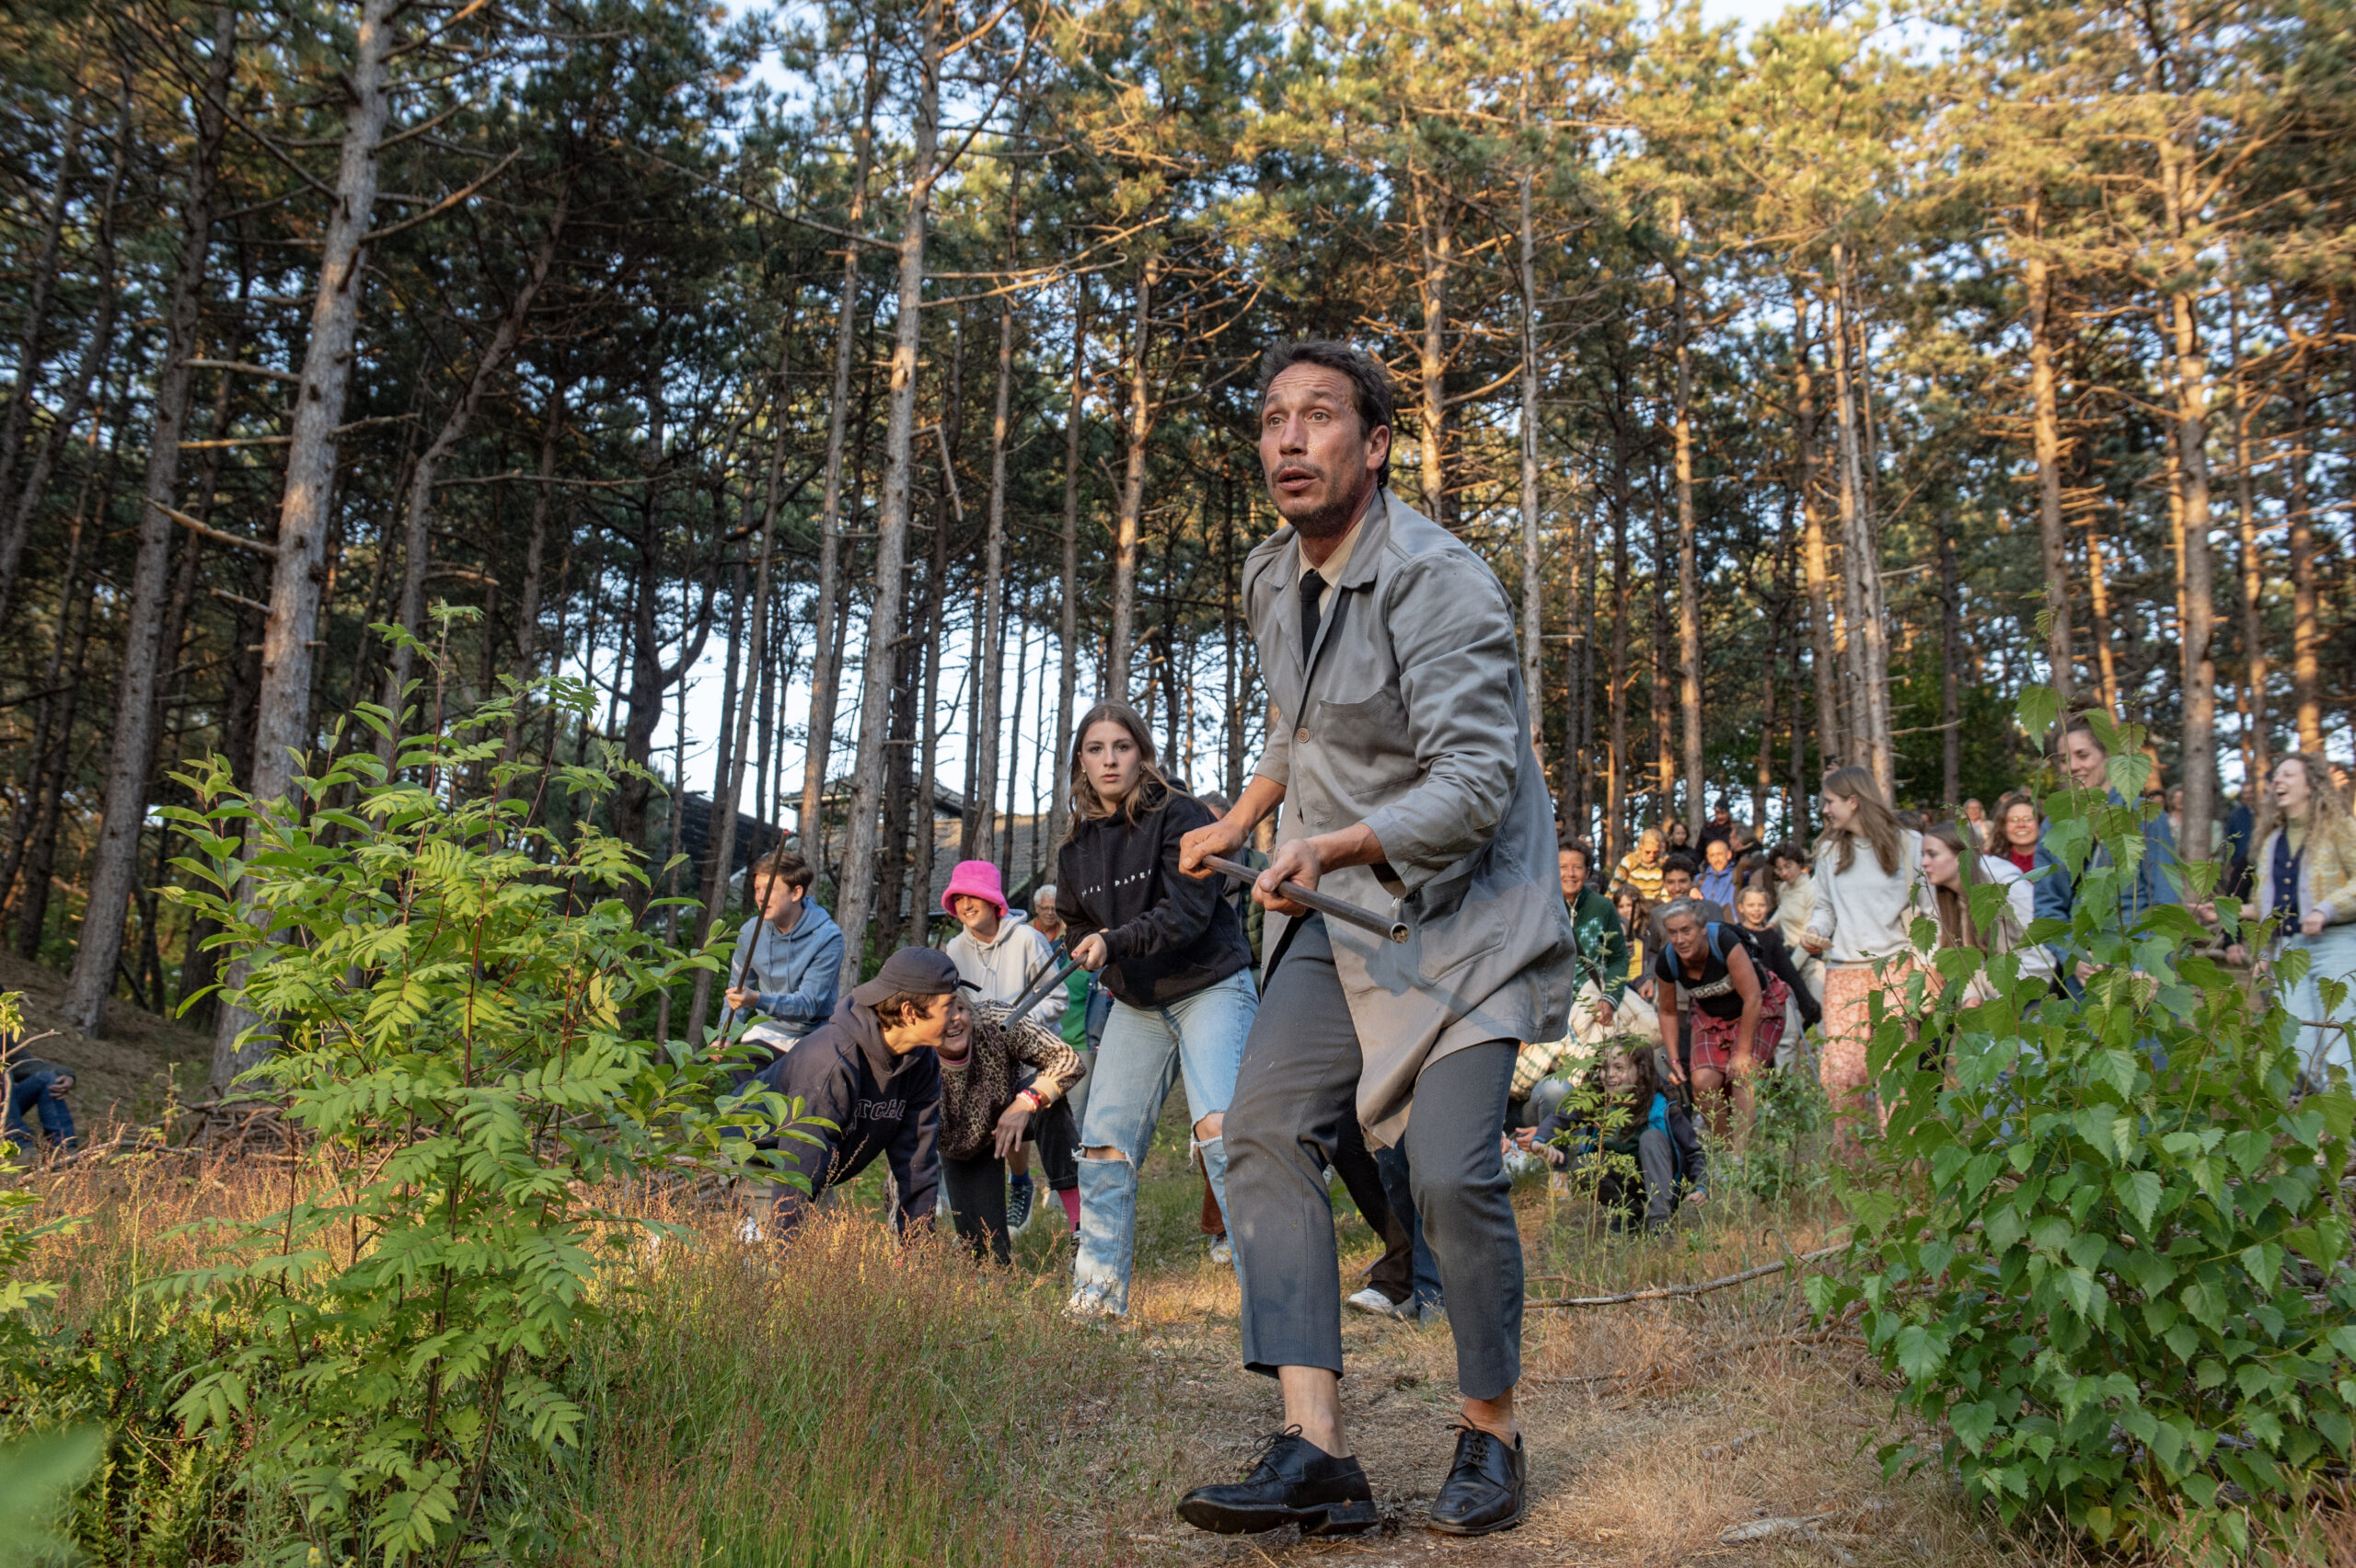 De in grijs geklede geluidskunstenaar Joan Catala loopt met een grote groep publiek door het bos op weg naar zijn voorstelling Idiofona tijdens Oerol 2023.